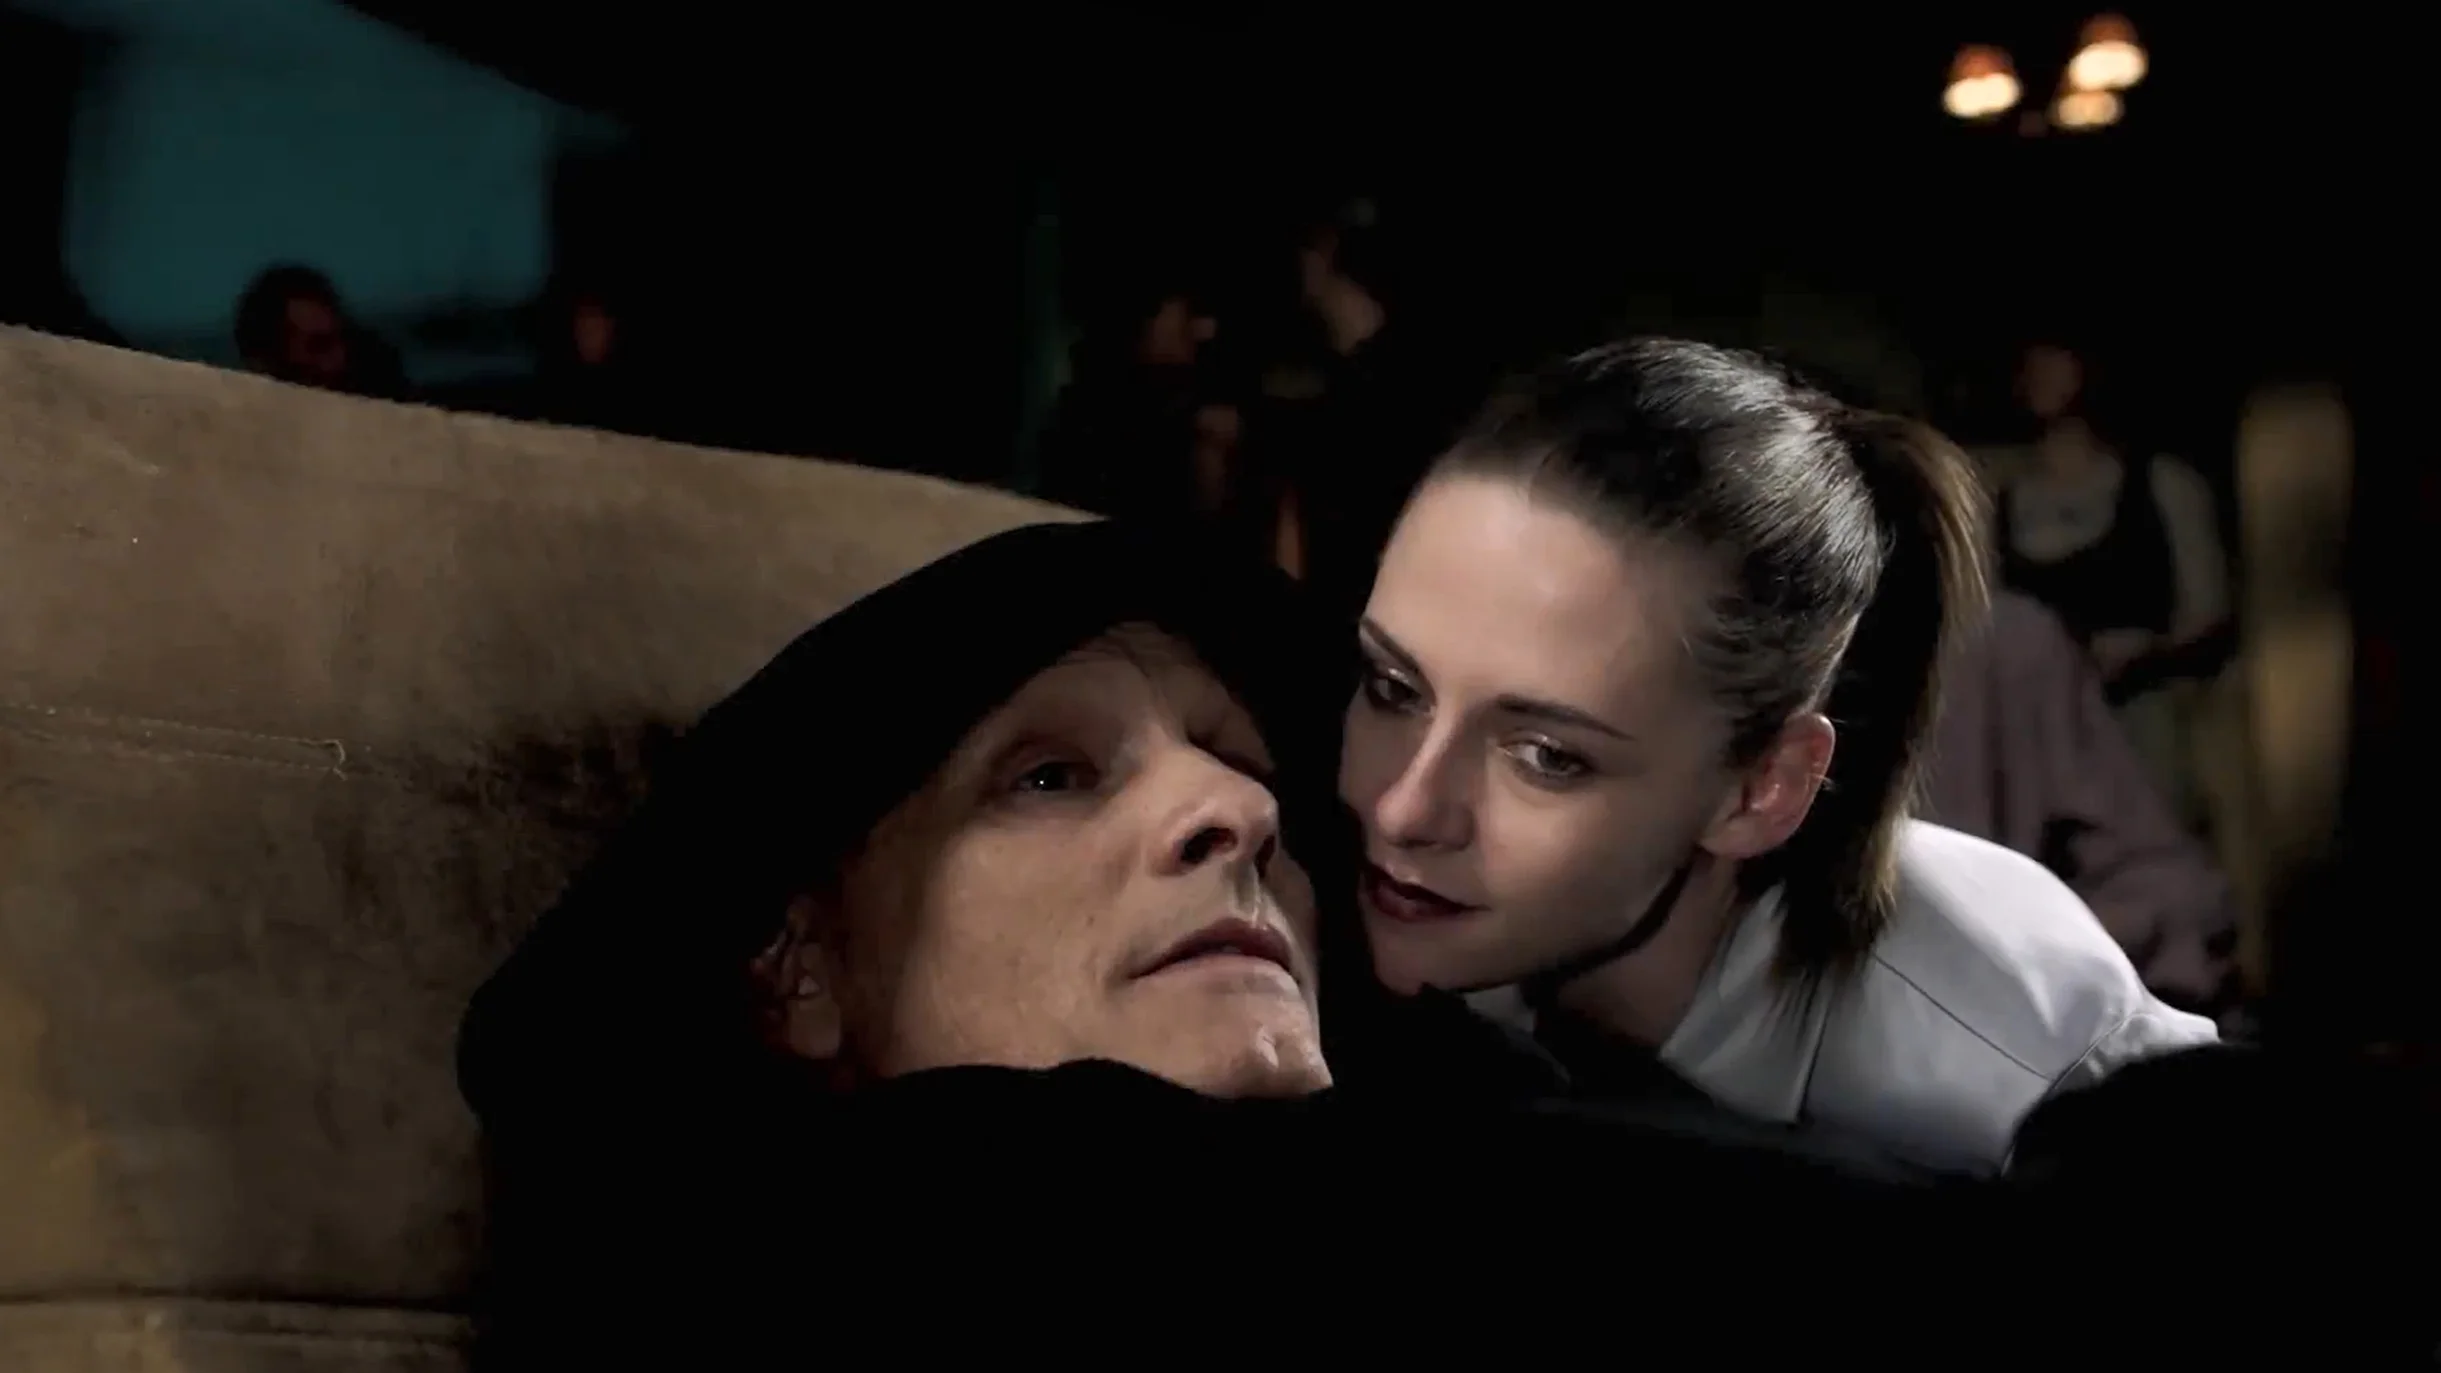 David Cronenbergd's "Crimes of the Future‎" release New trailer